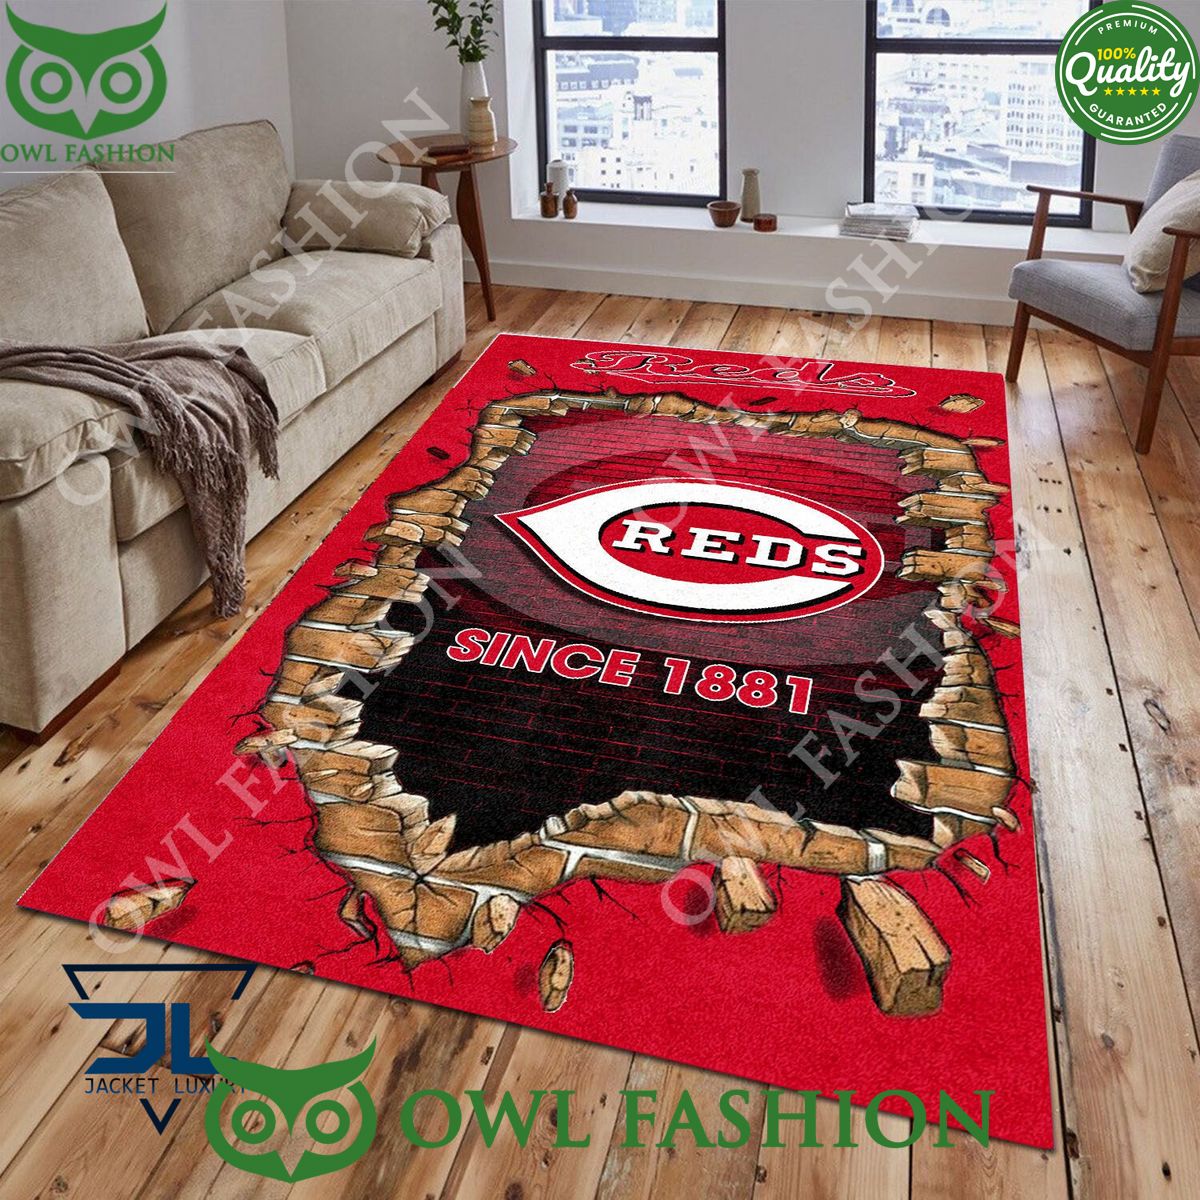 Broken Wall Cincinnati Reds MLB Baseball Team Rug Carpet Living Room